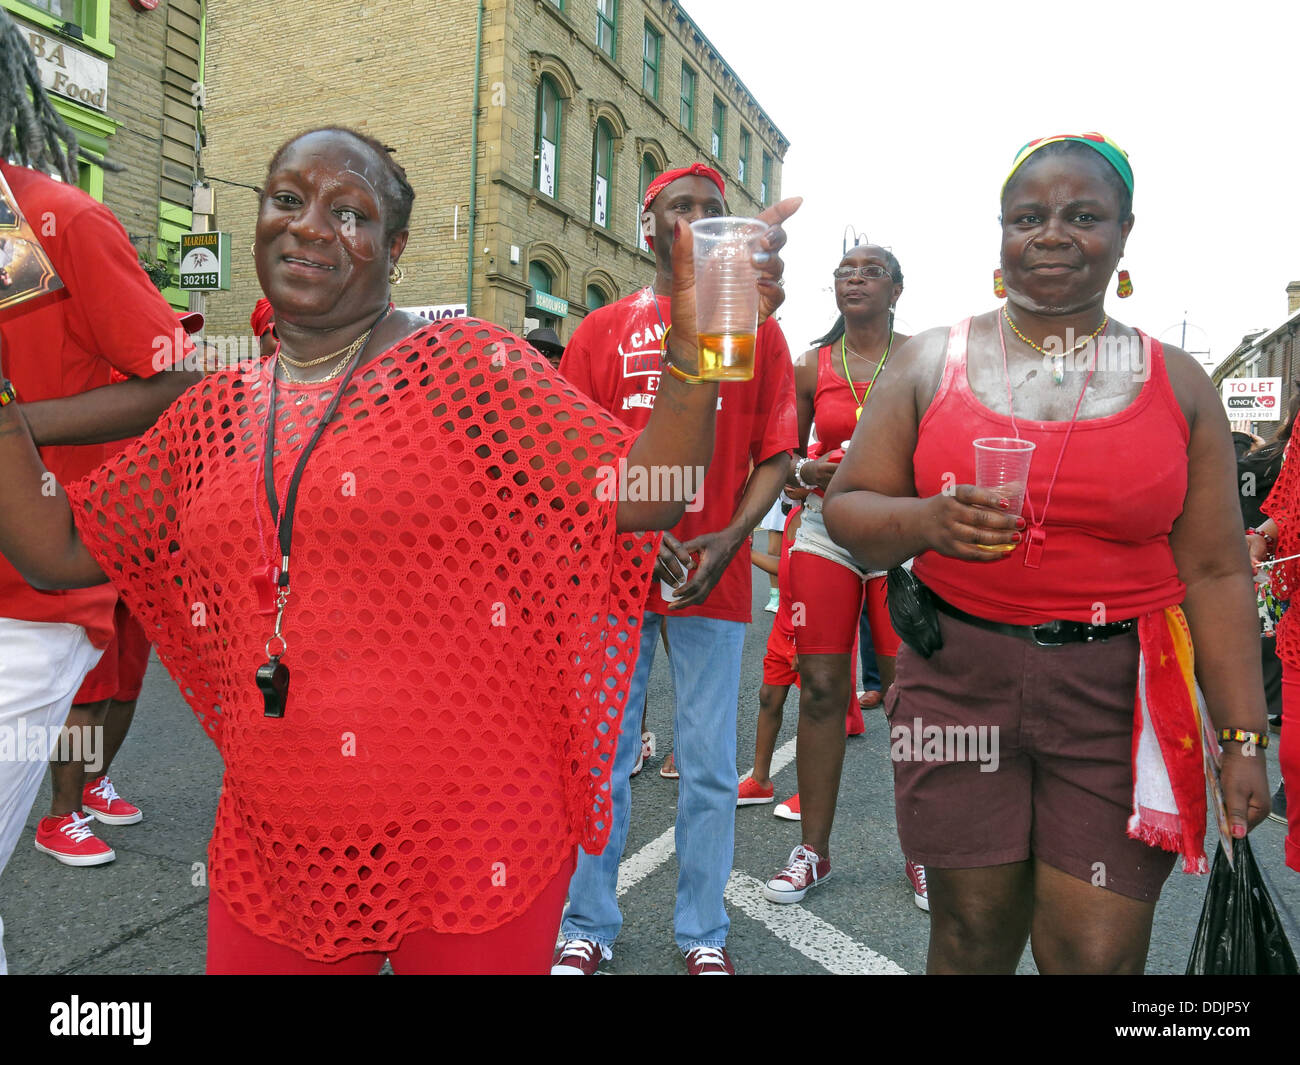 Danseurs costumés en rouge de Huddersfield Carnival parade 2013 fête de rue Africains des Caraïbes Banque D'Images